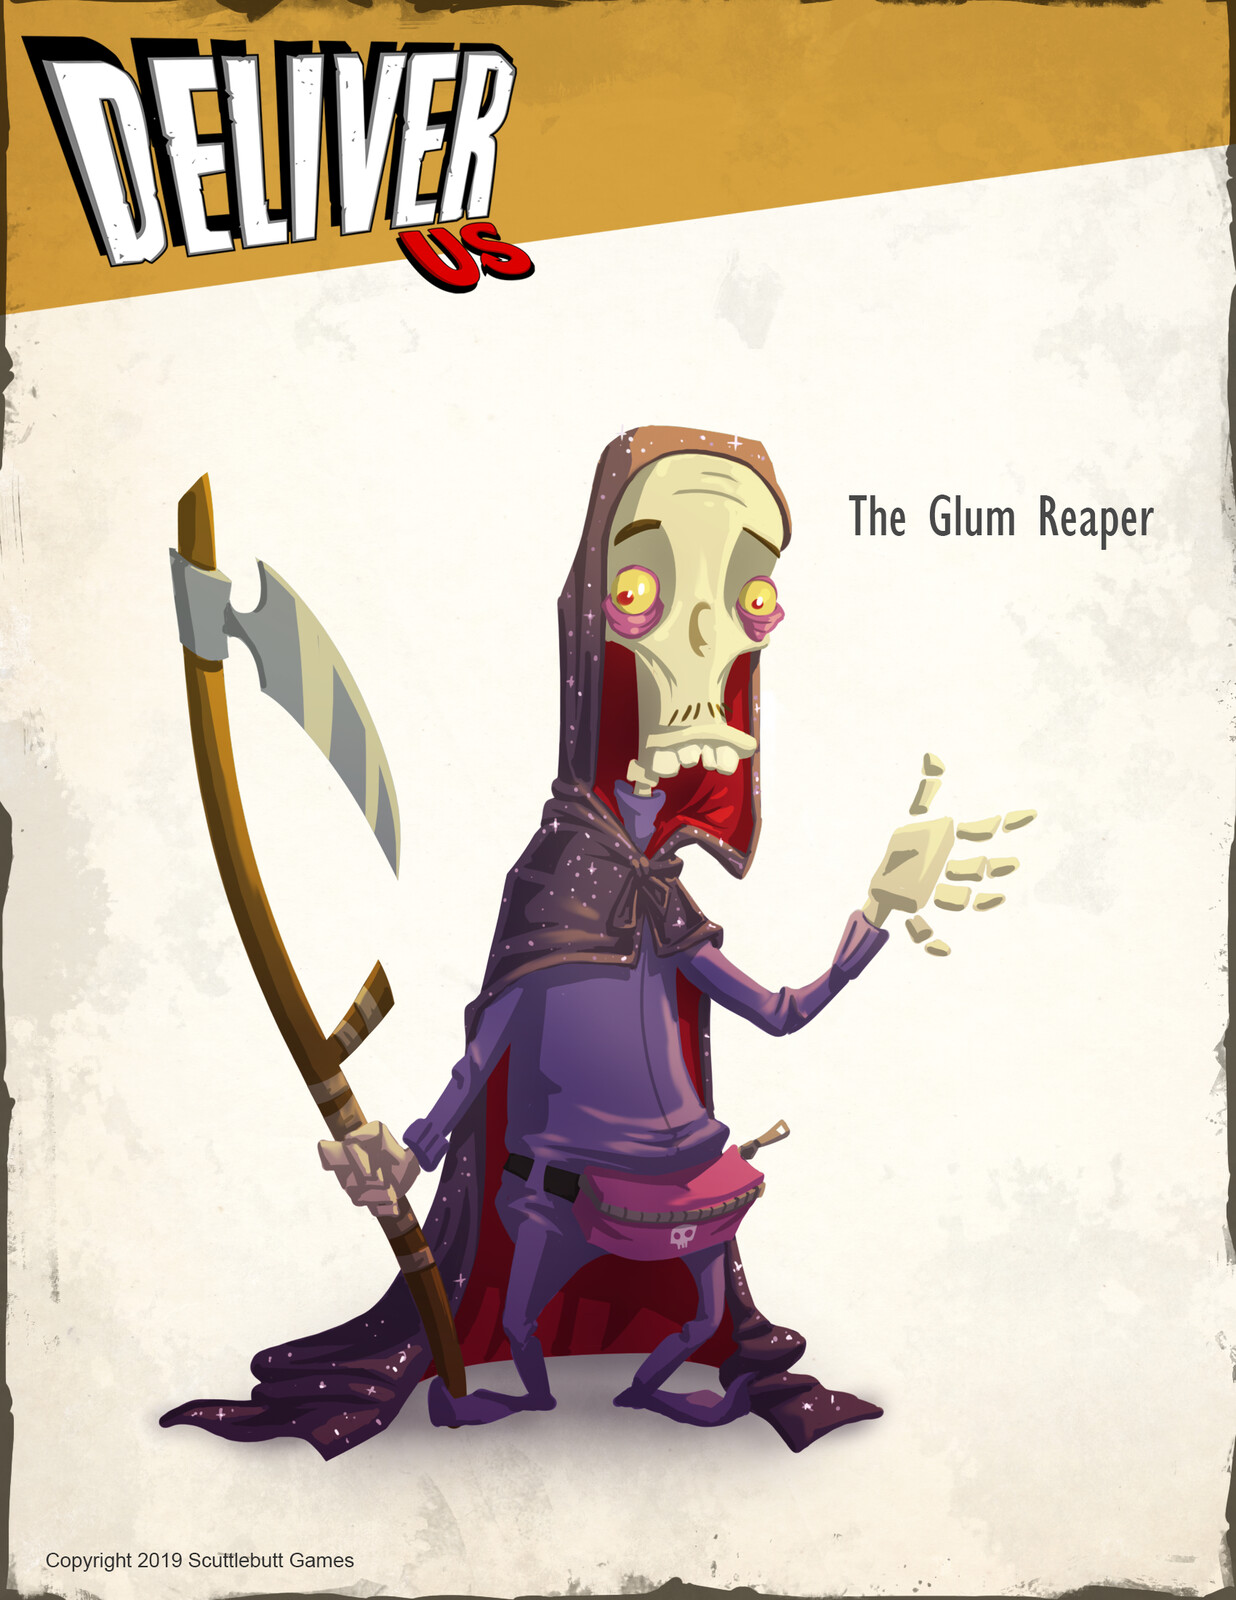 The Glum Reaper